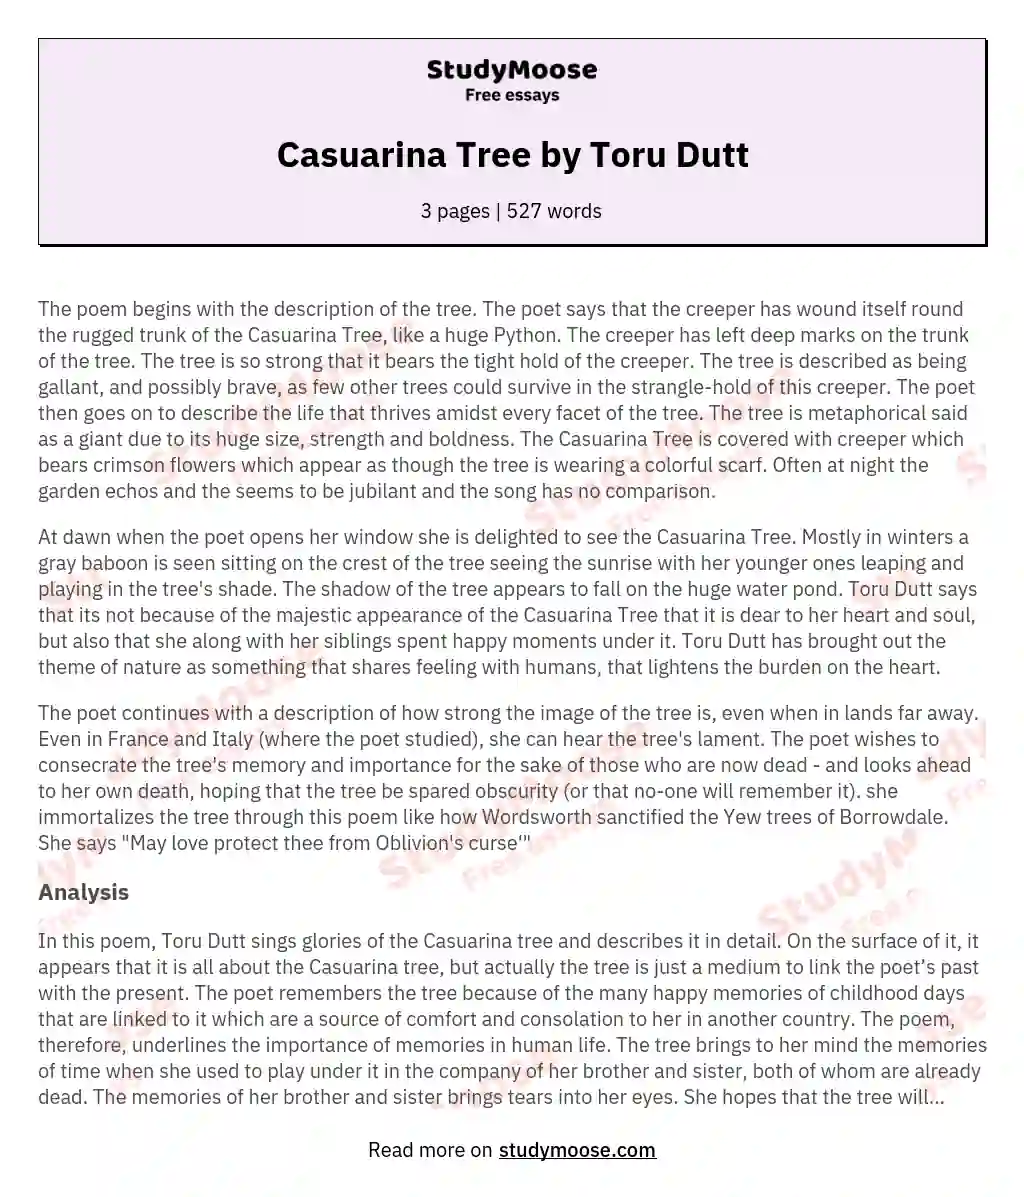 Casuarina Tree by Toru Dutt essay